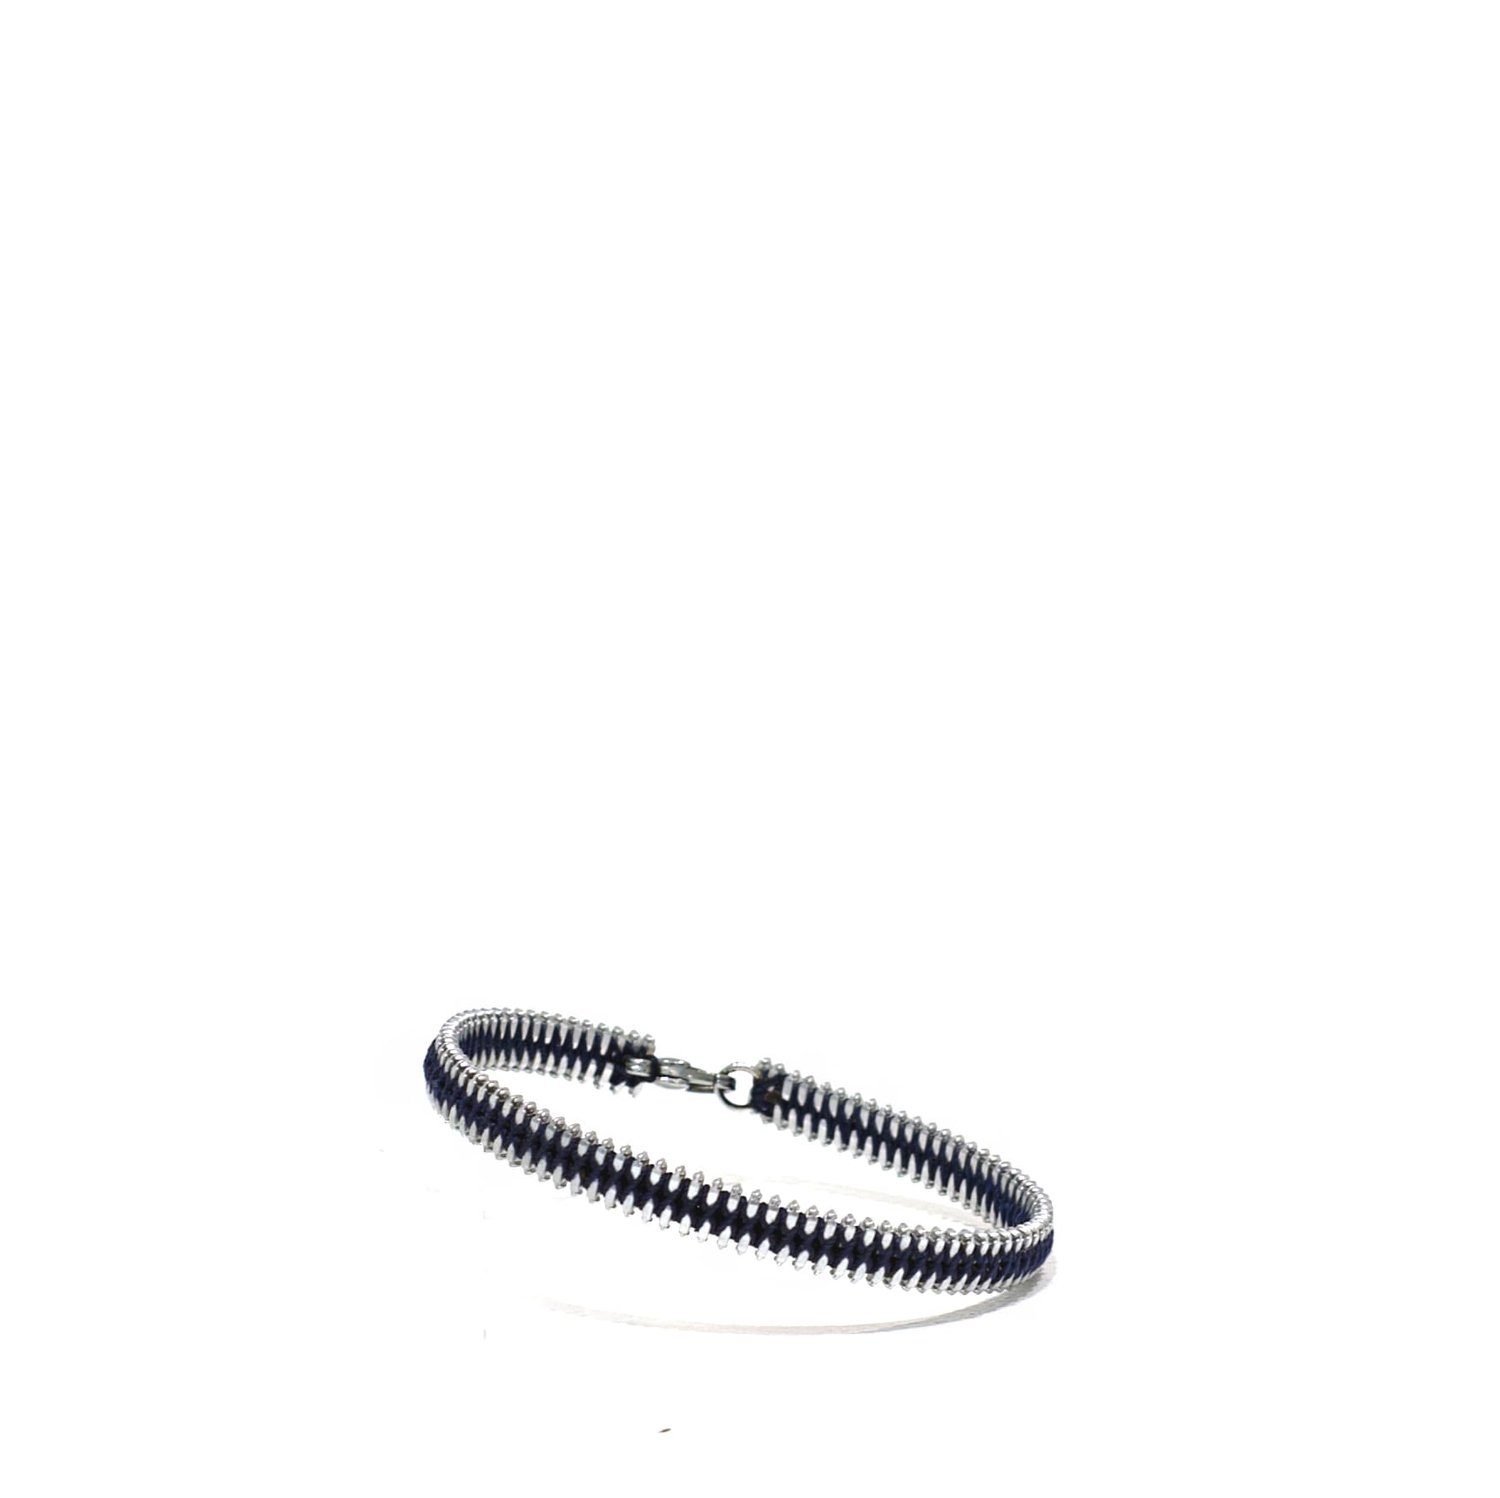 Bracelet porte bonheur femme : l'accessoire pour optimiser votre